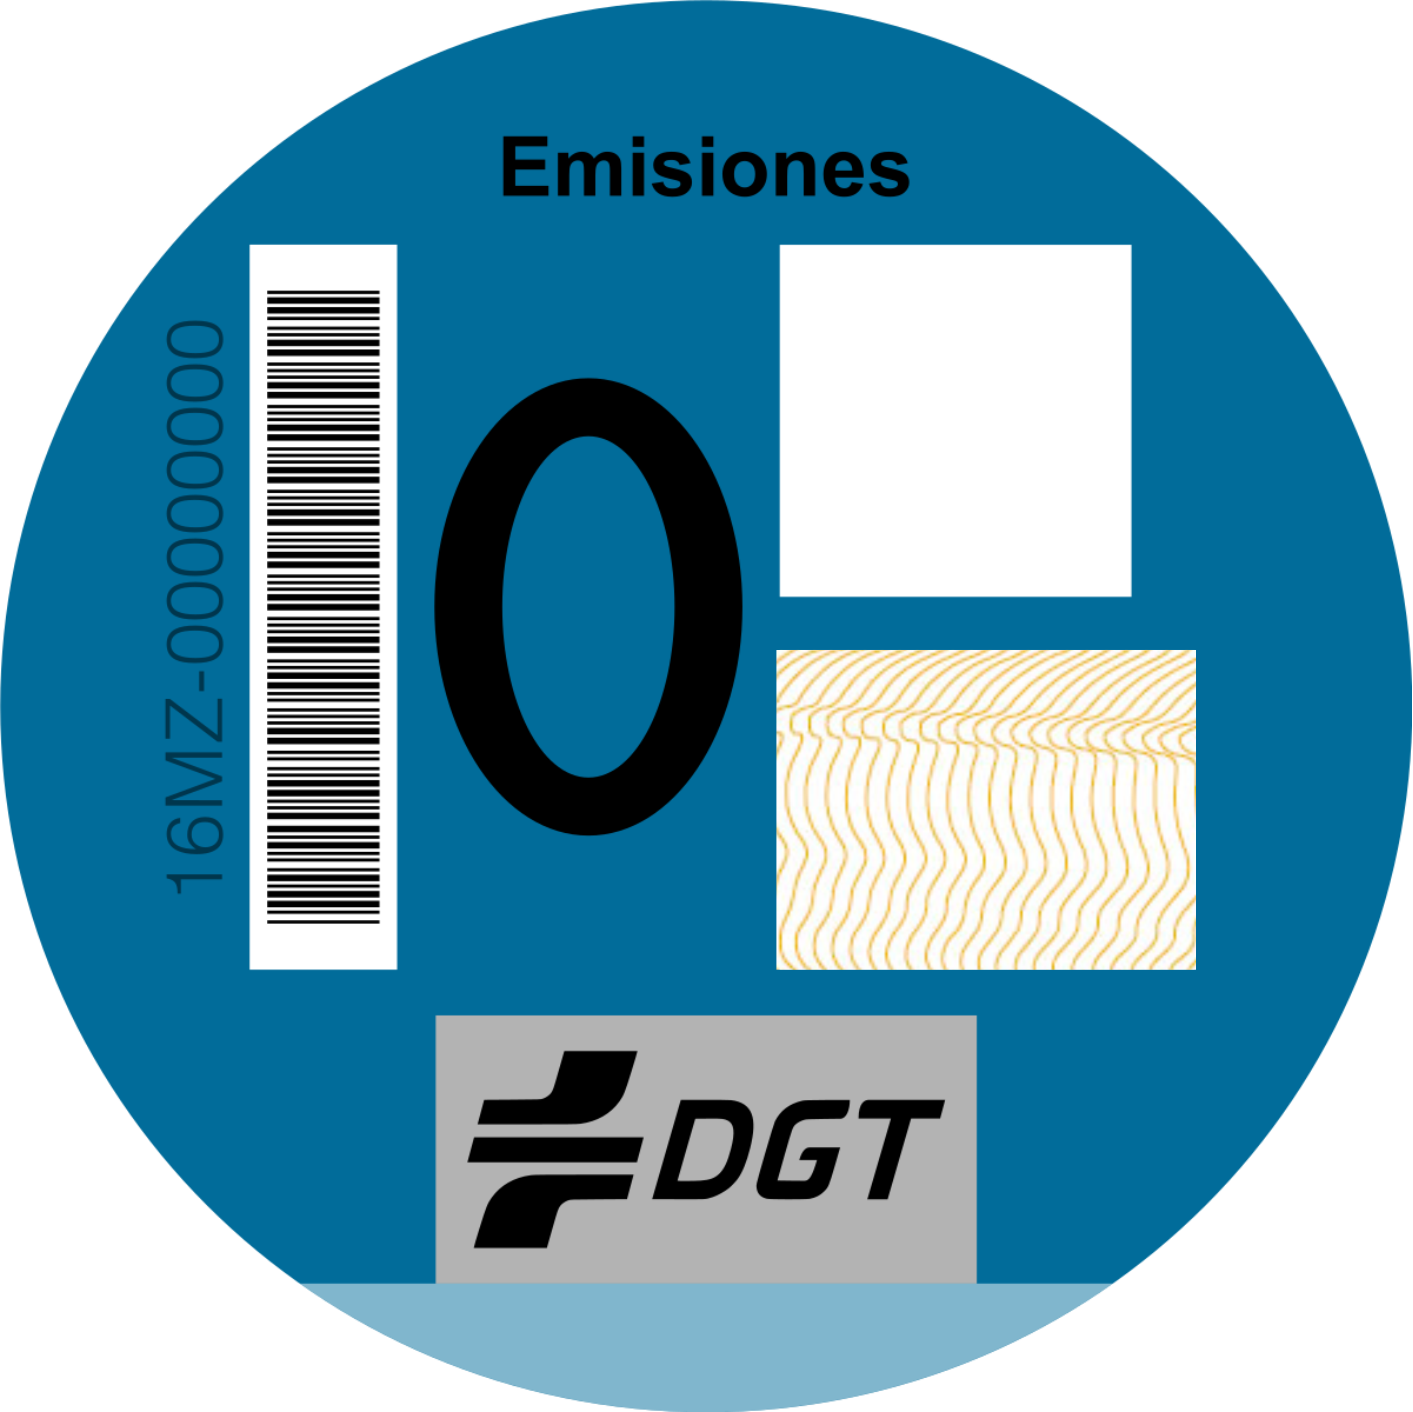 pegatina 0 emisiones DGT